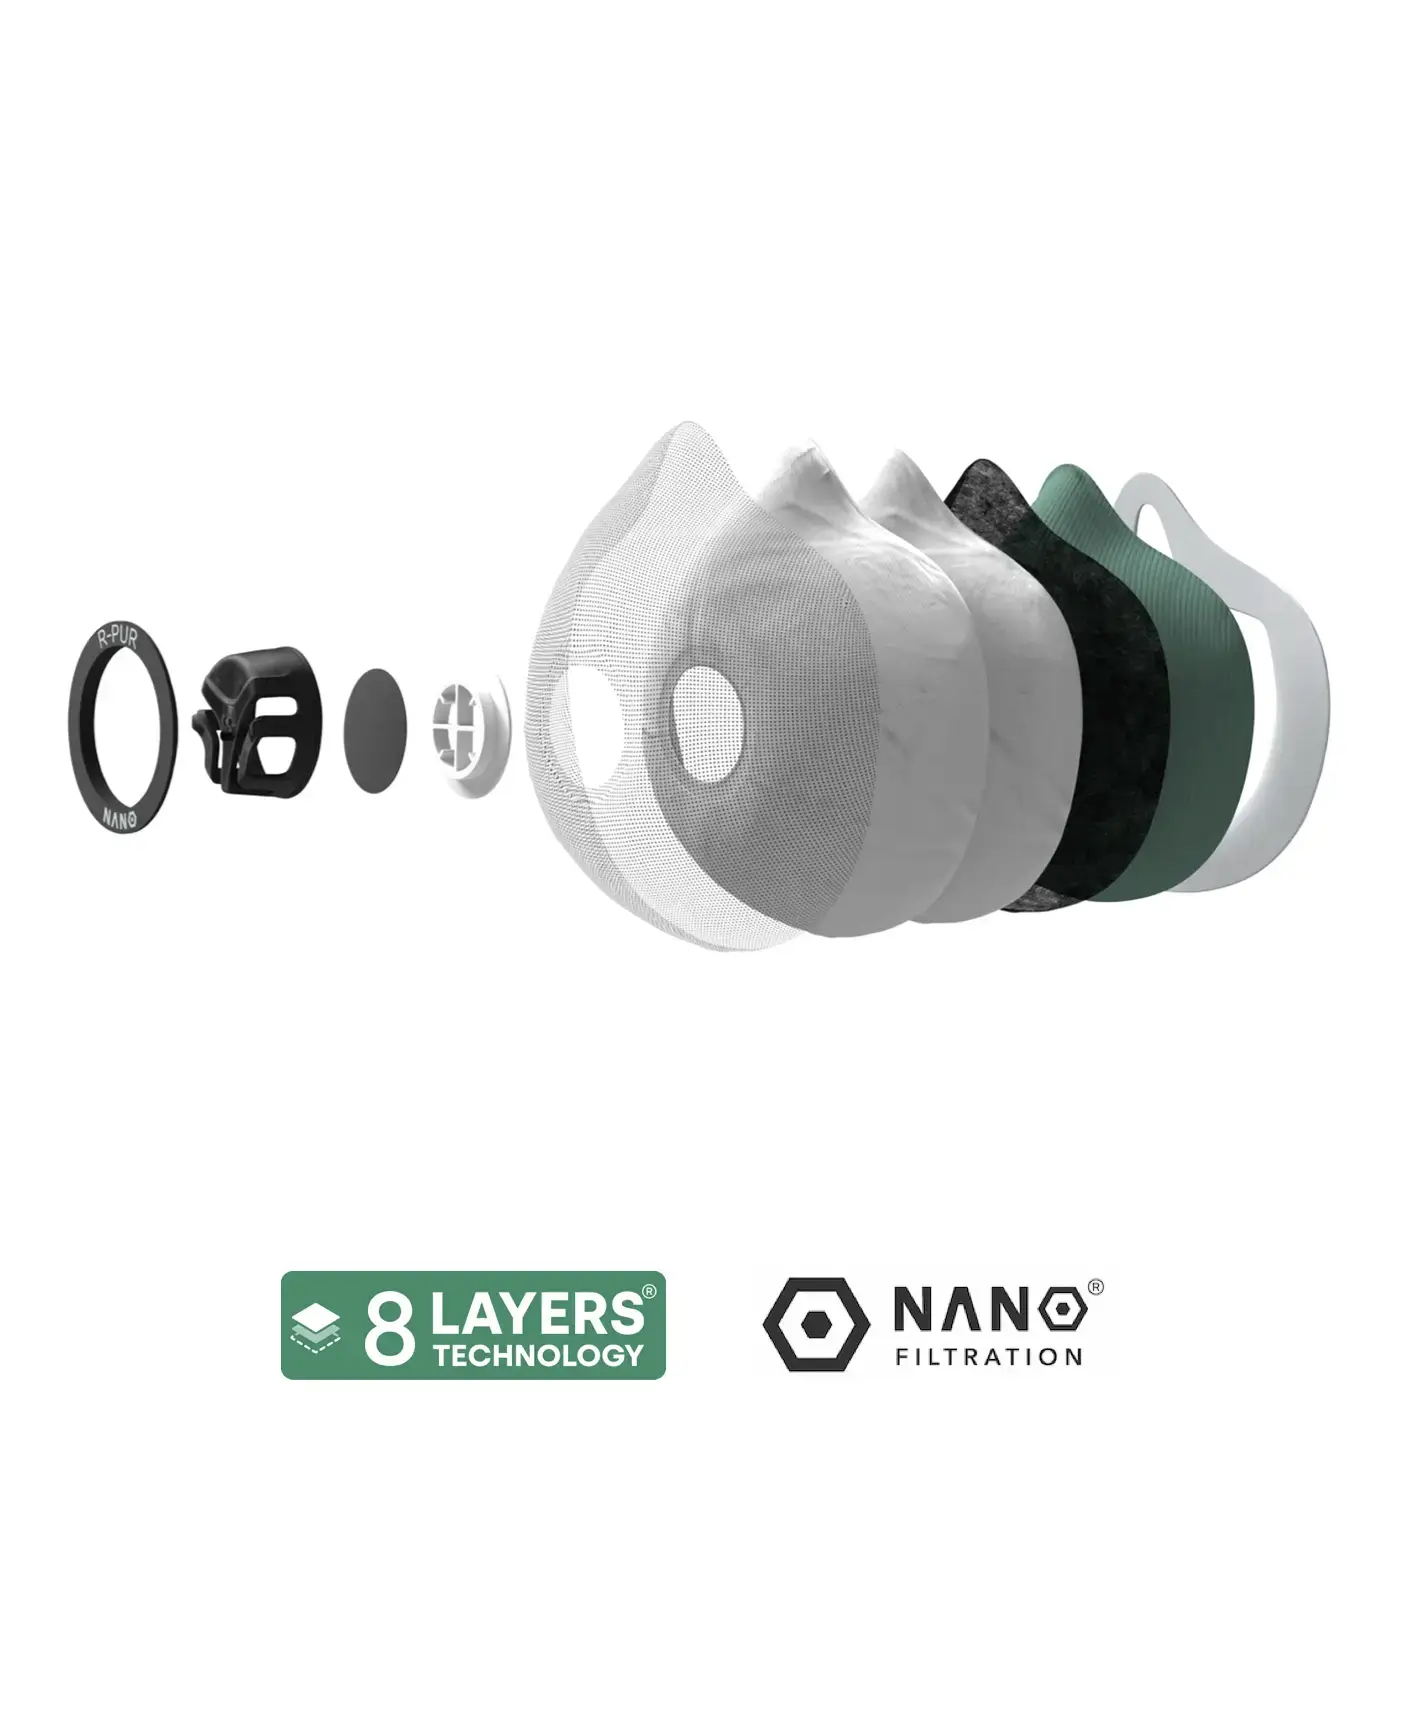 filtre R-PUR décomposé avec deux logos nano filtration et 8 layers technology